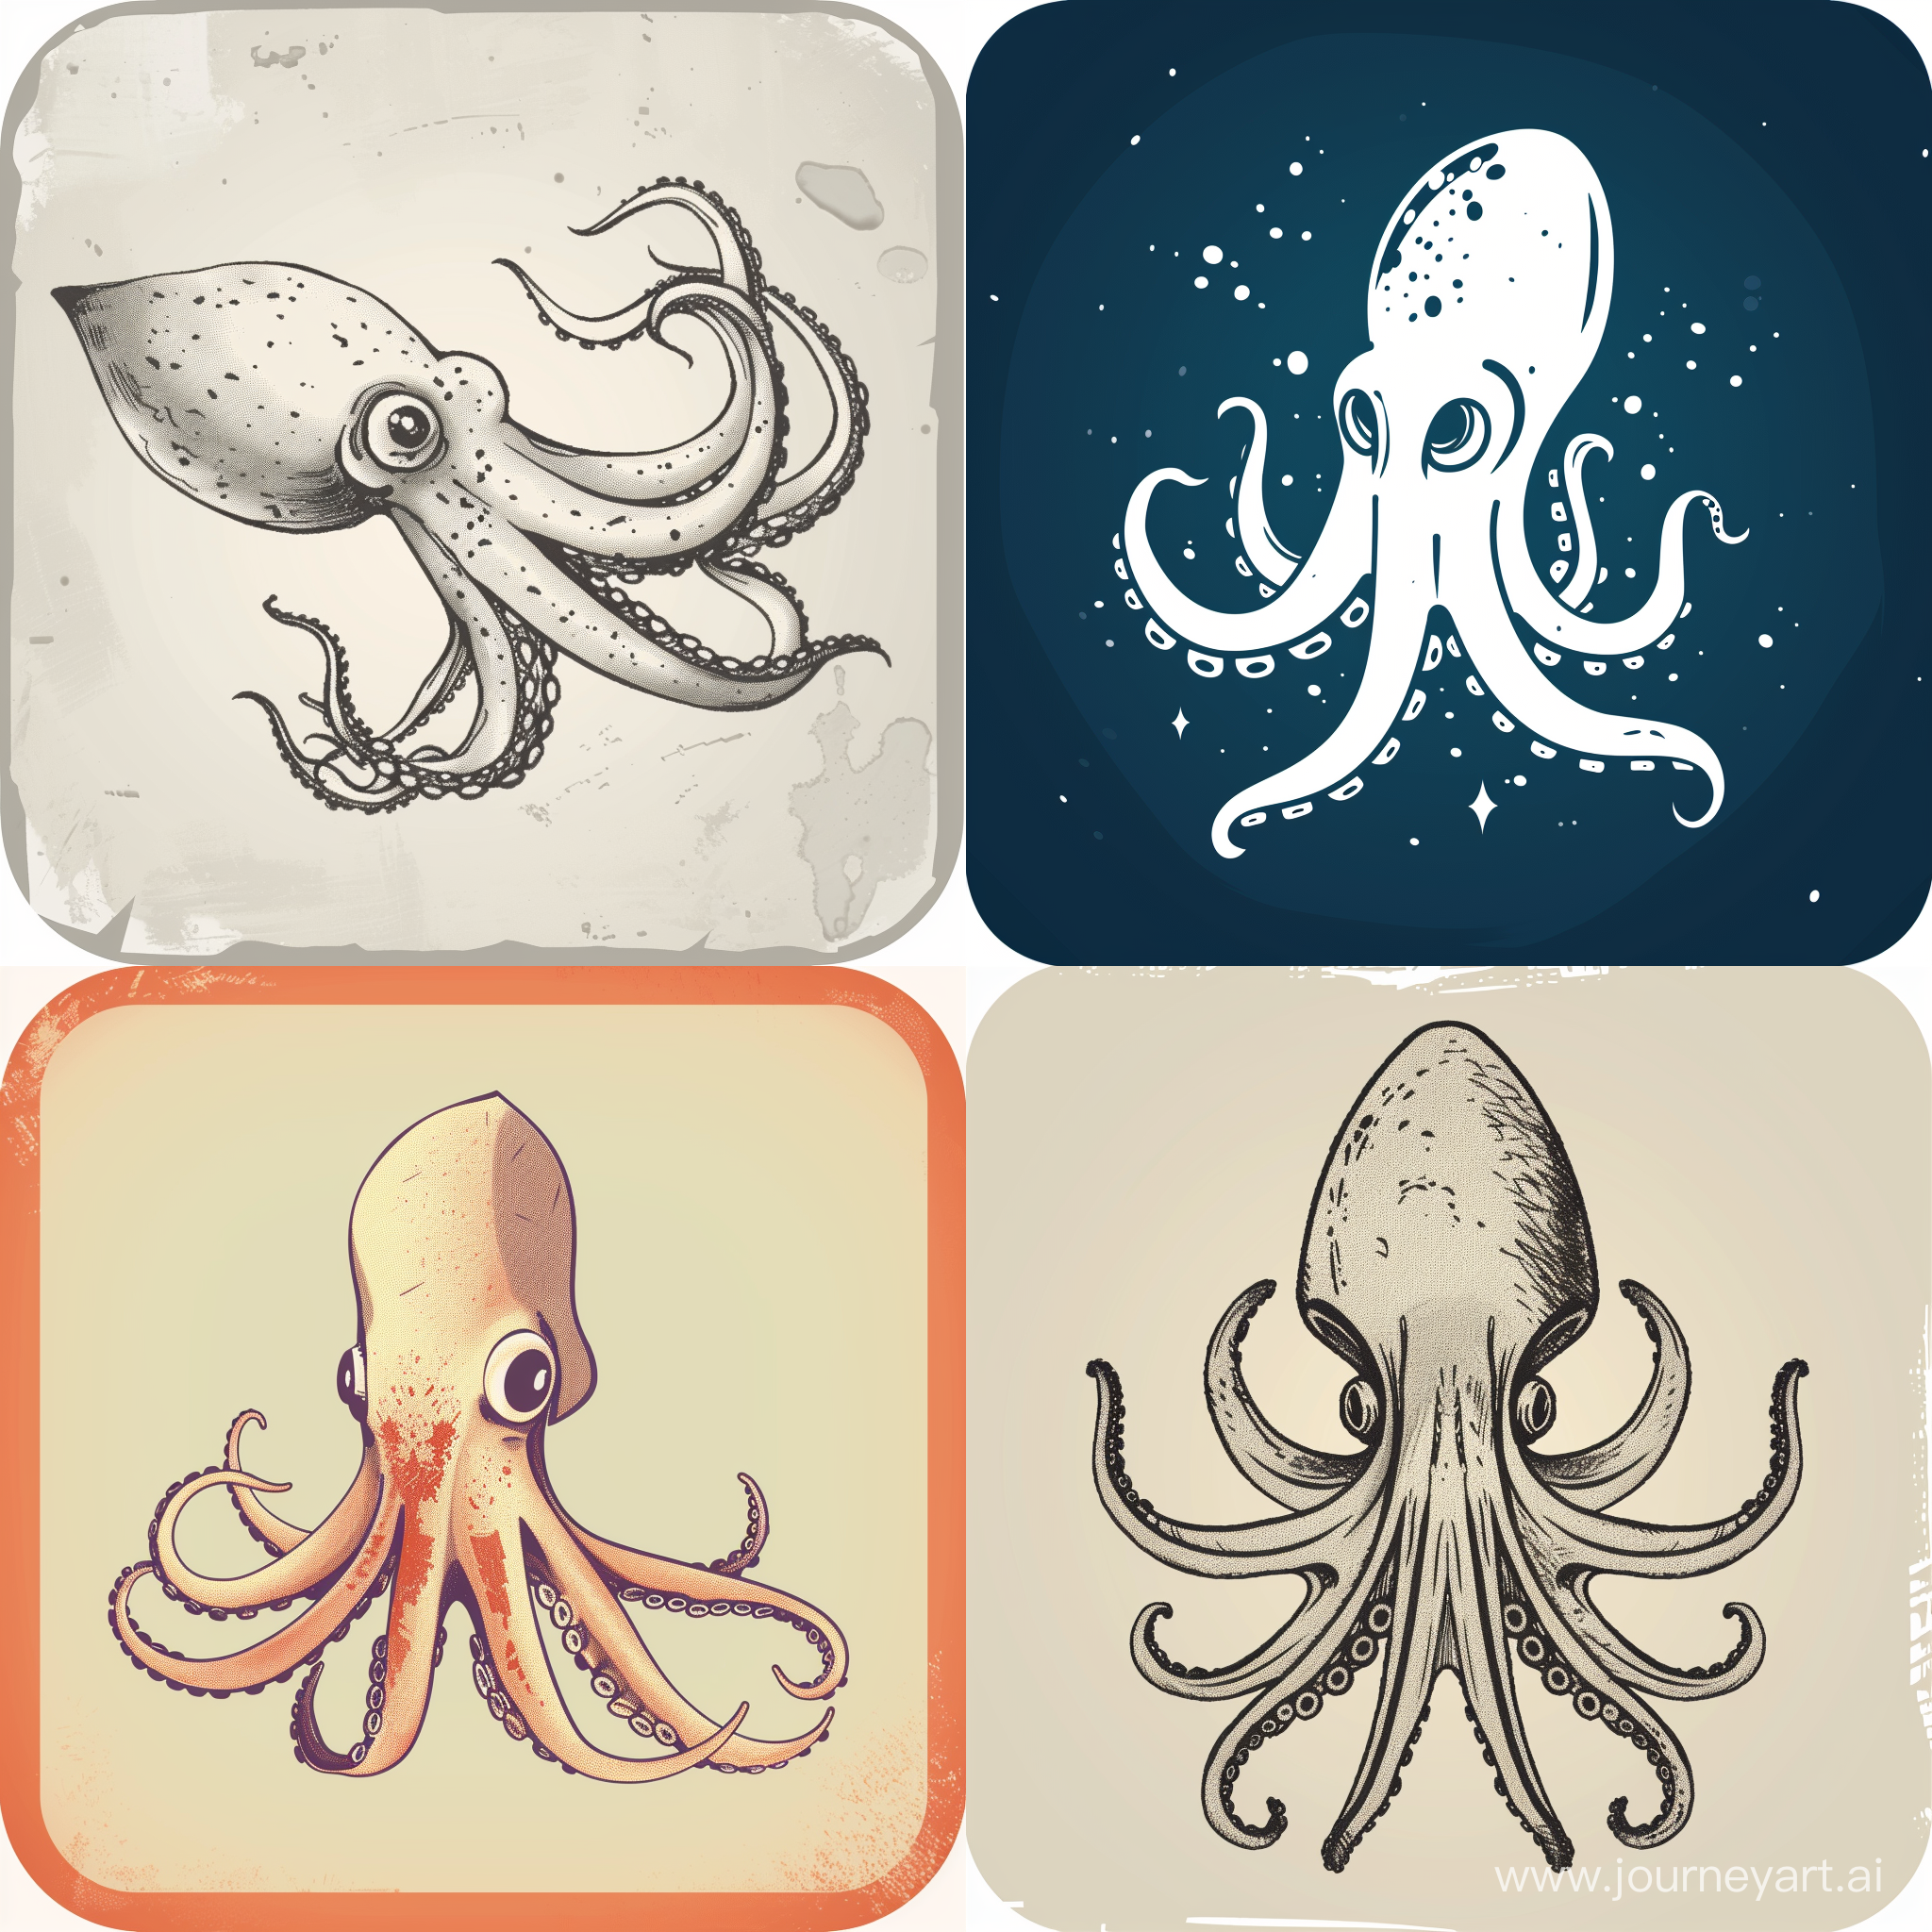 app logo as a drawn squid